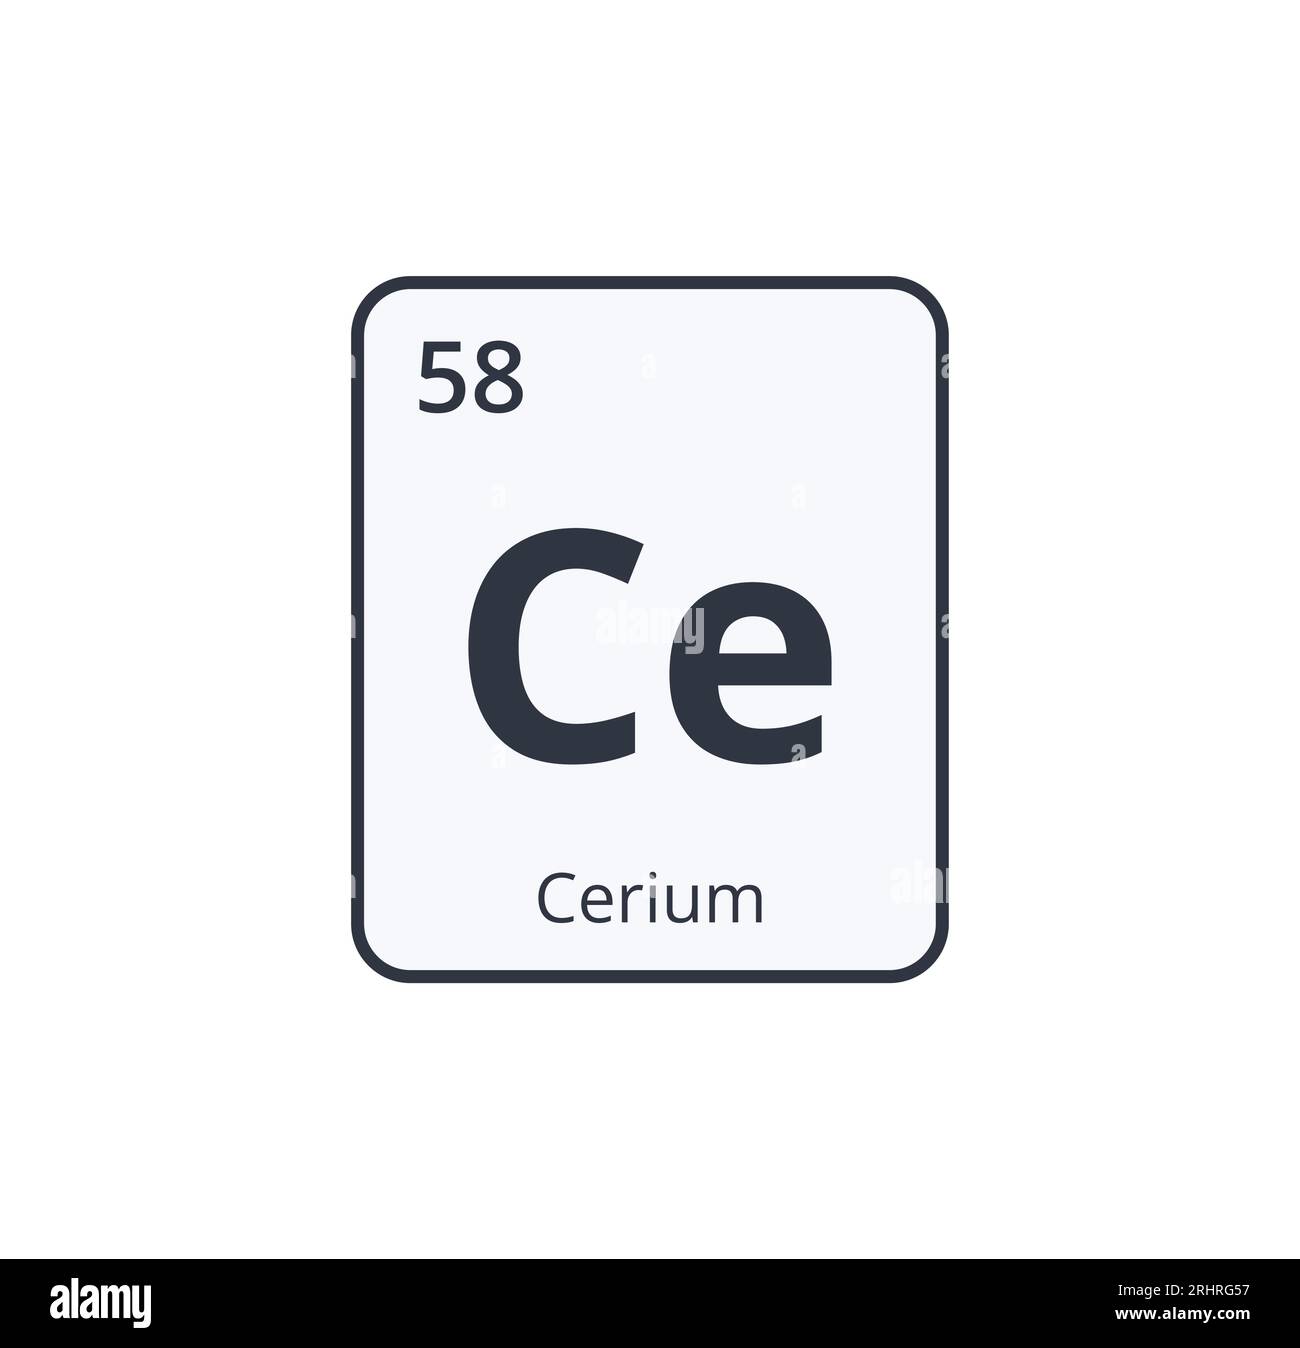 Cerium Chemical Symbol.  Stock Vector